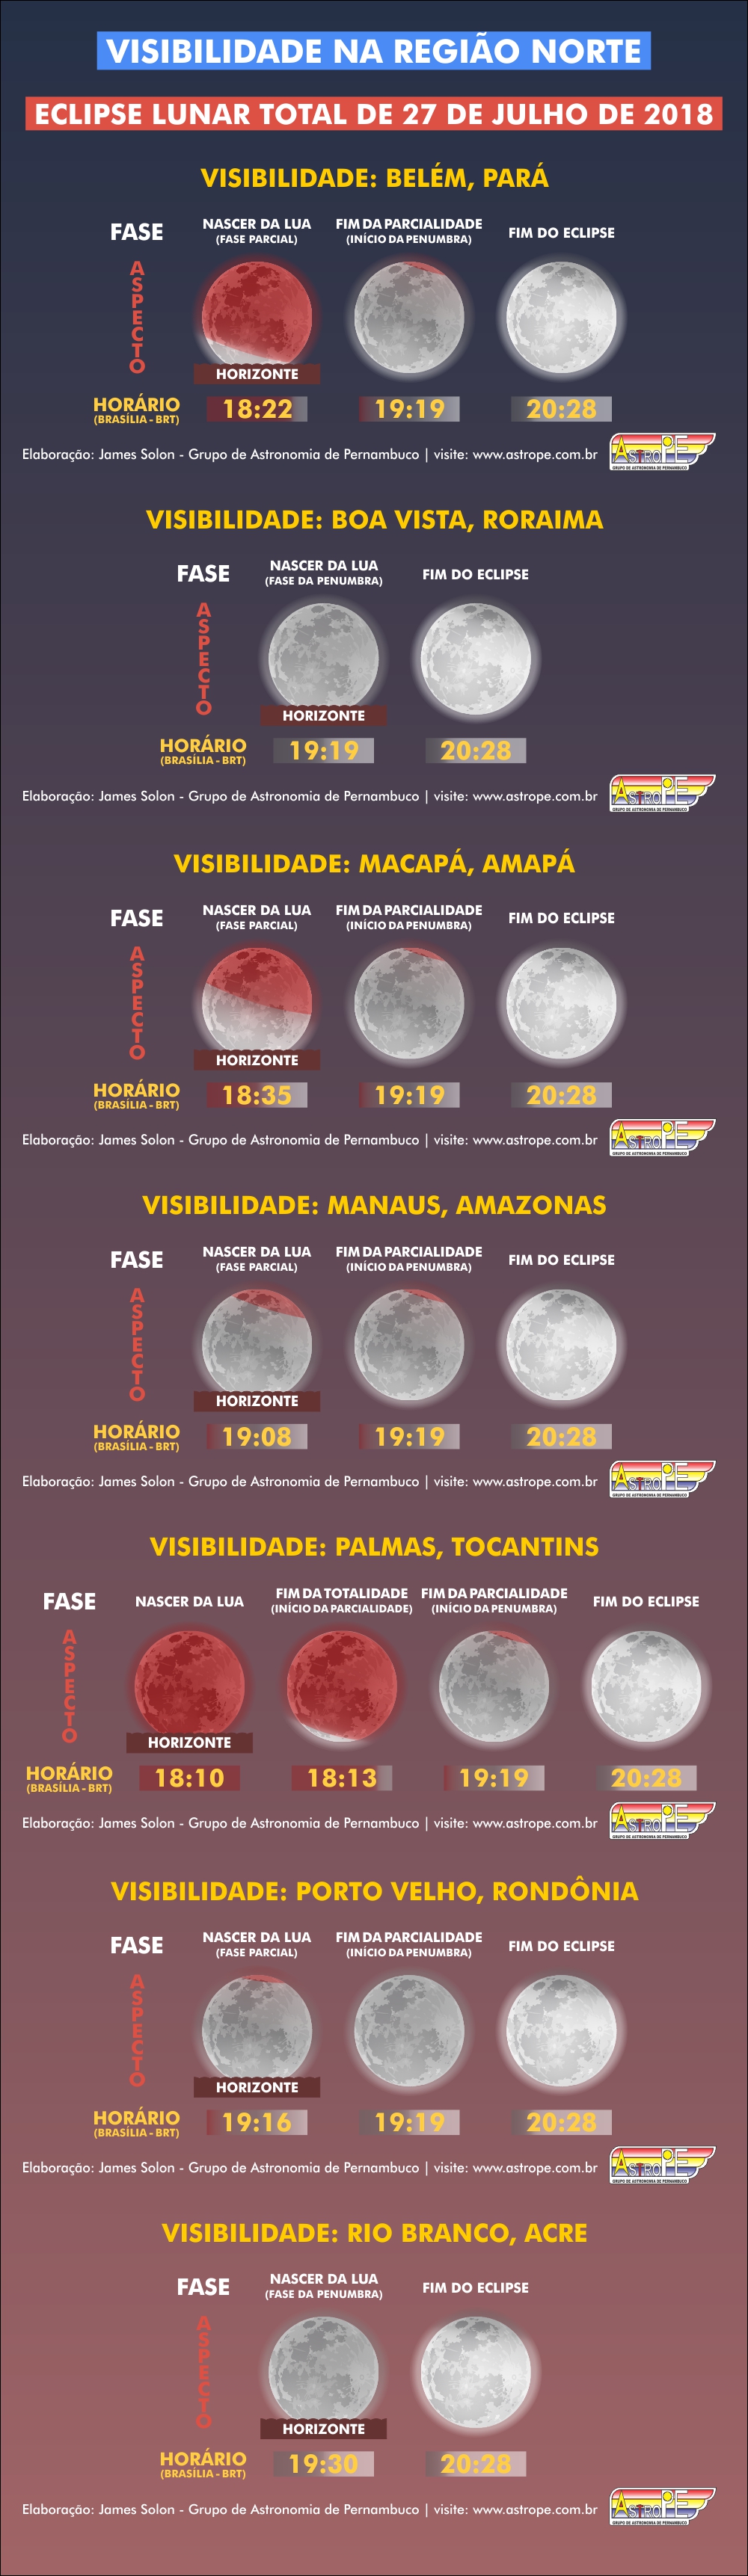 Horários e visibilidade do Eclipse Lunar Total de 27 de julho de 2018 na Região Norte do Brasil. Crédito: AstroPE.